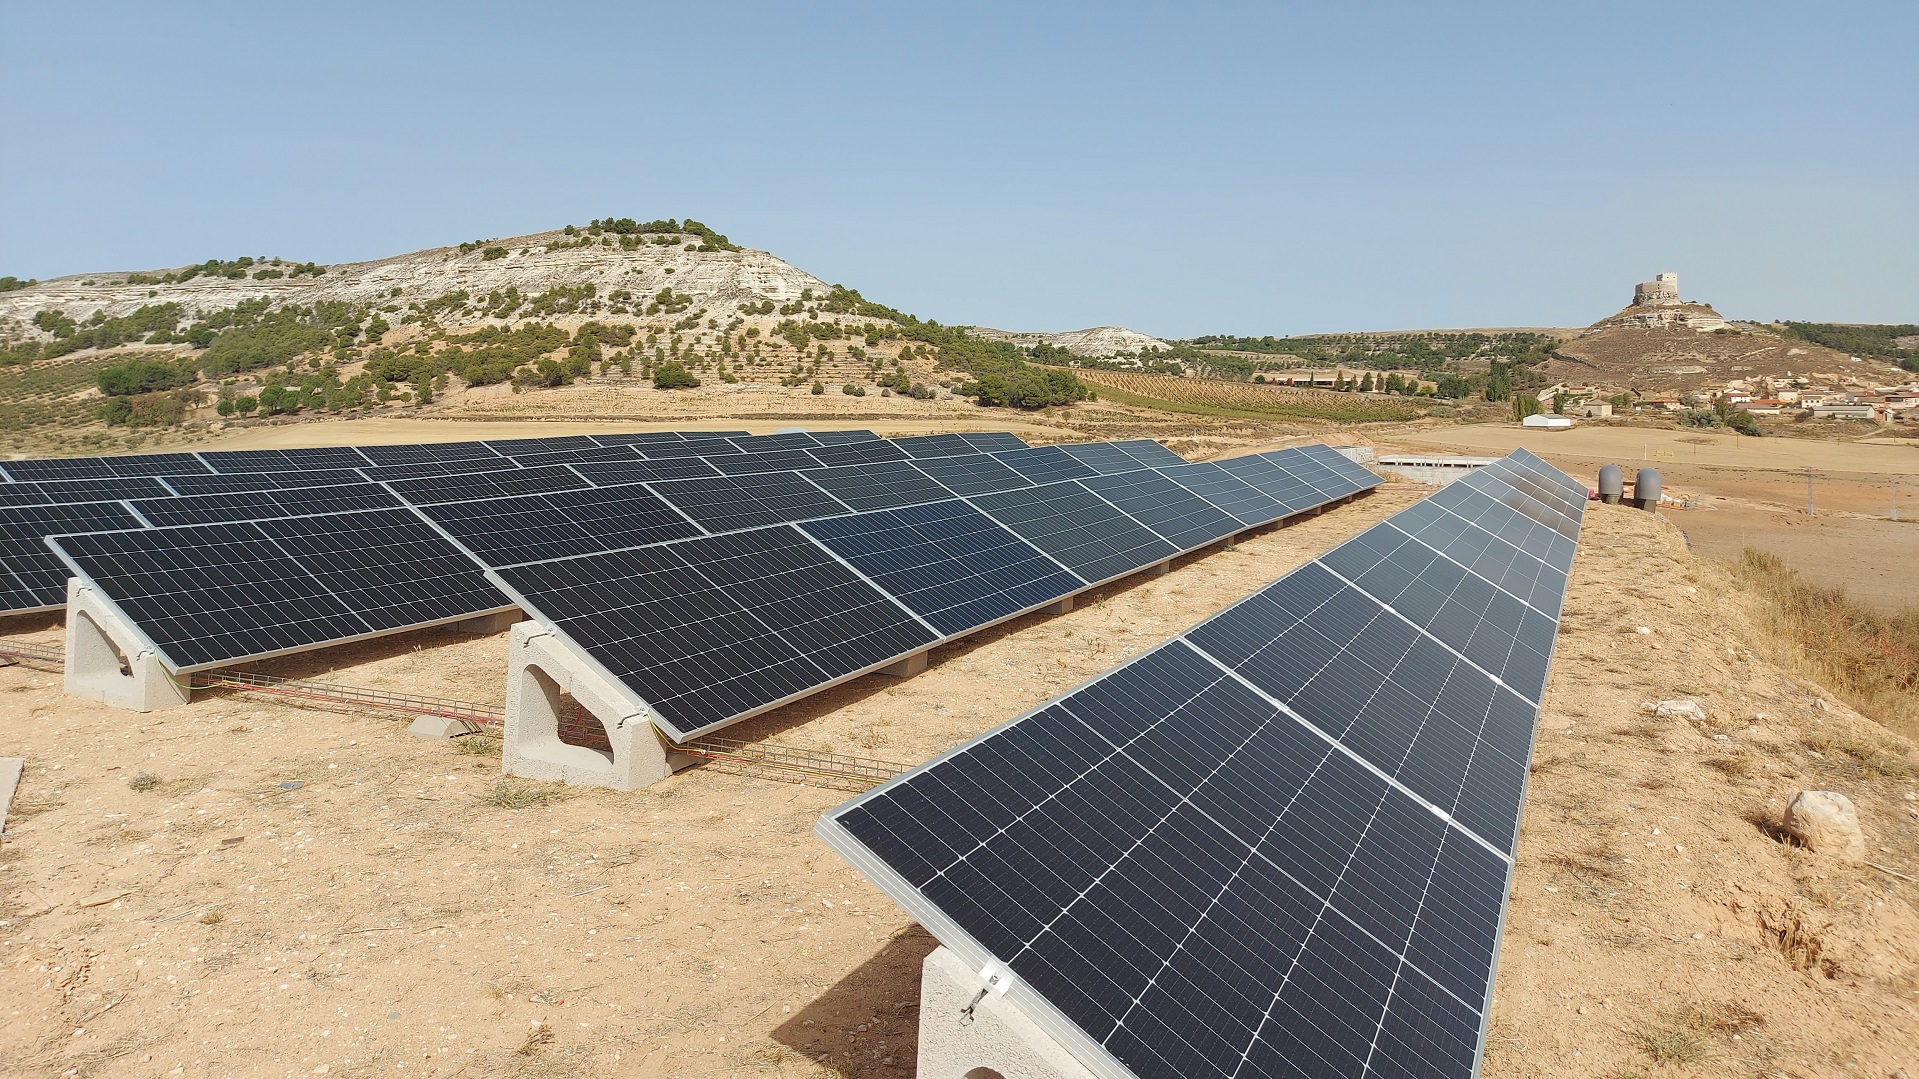 Instalación solar fotovoltaica de autoconsumo de 72,5 kWp para Bodega Grupo Yllera (Curiel de Duero)